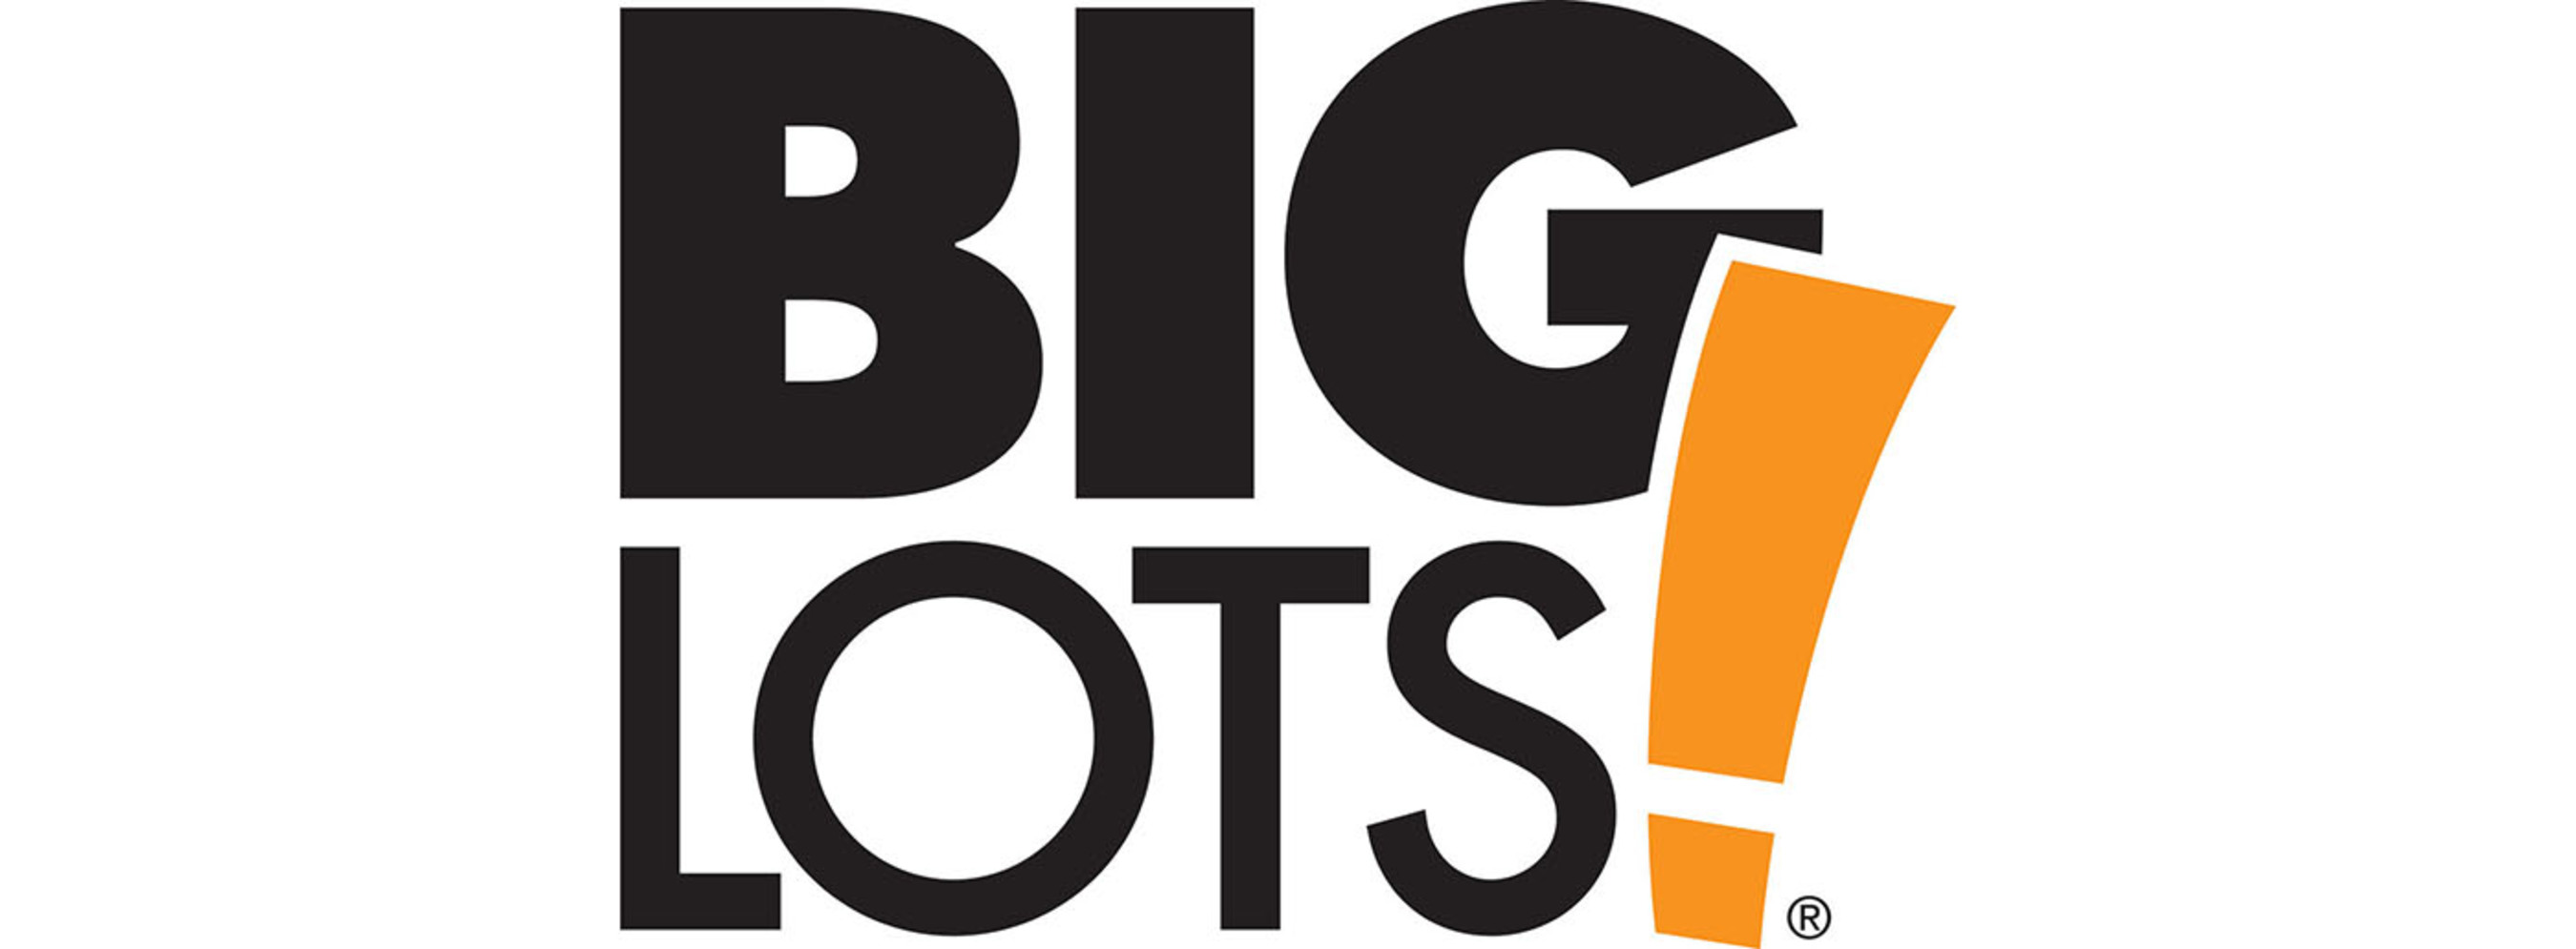 Big Lots, Inc. logo.